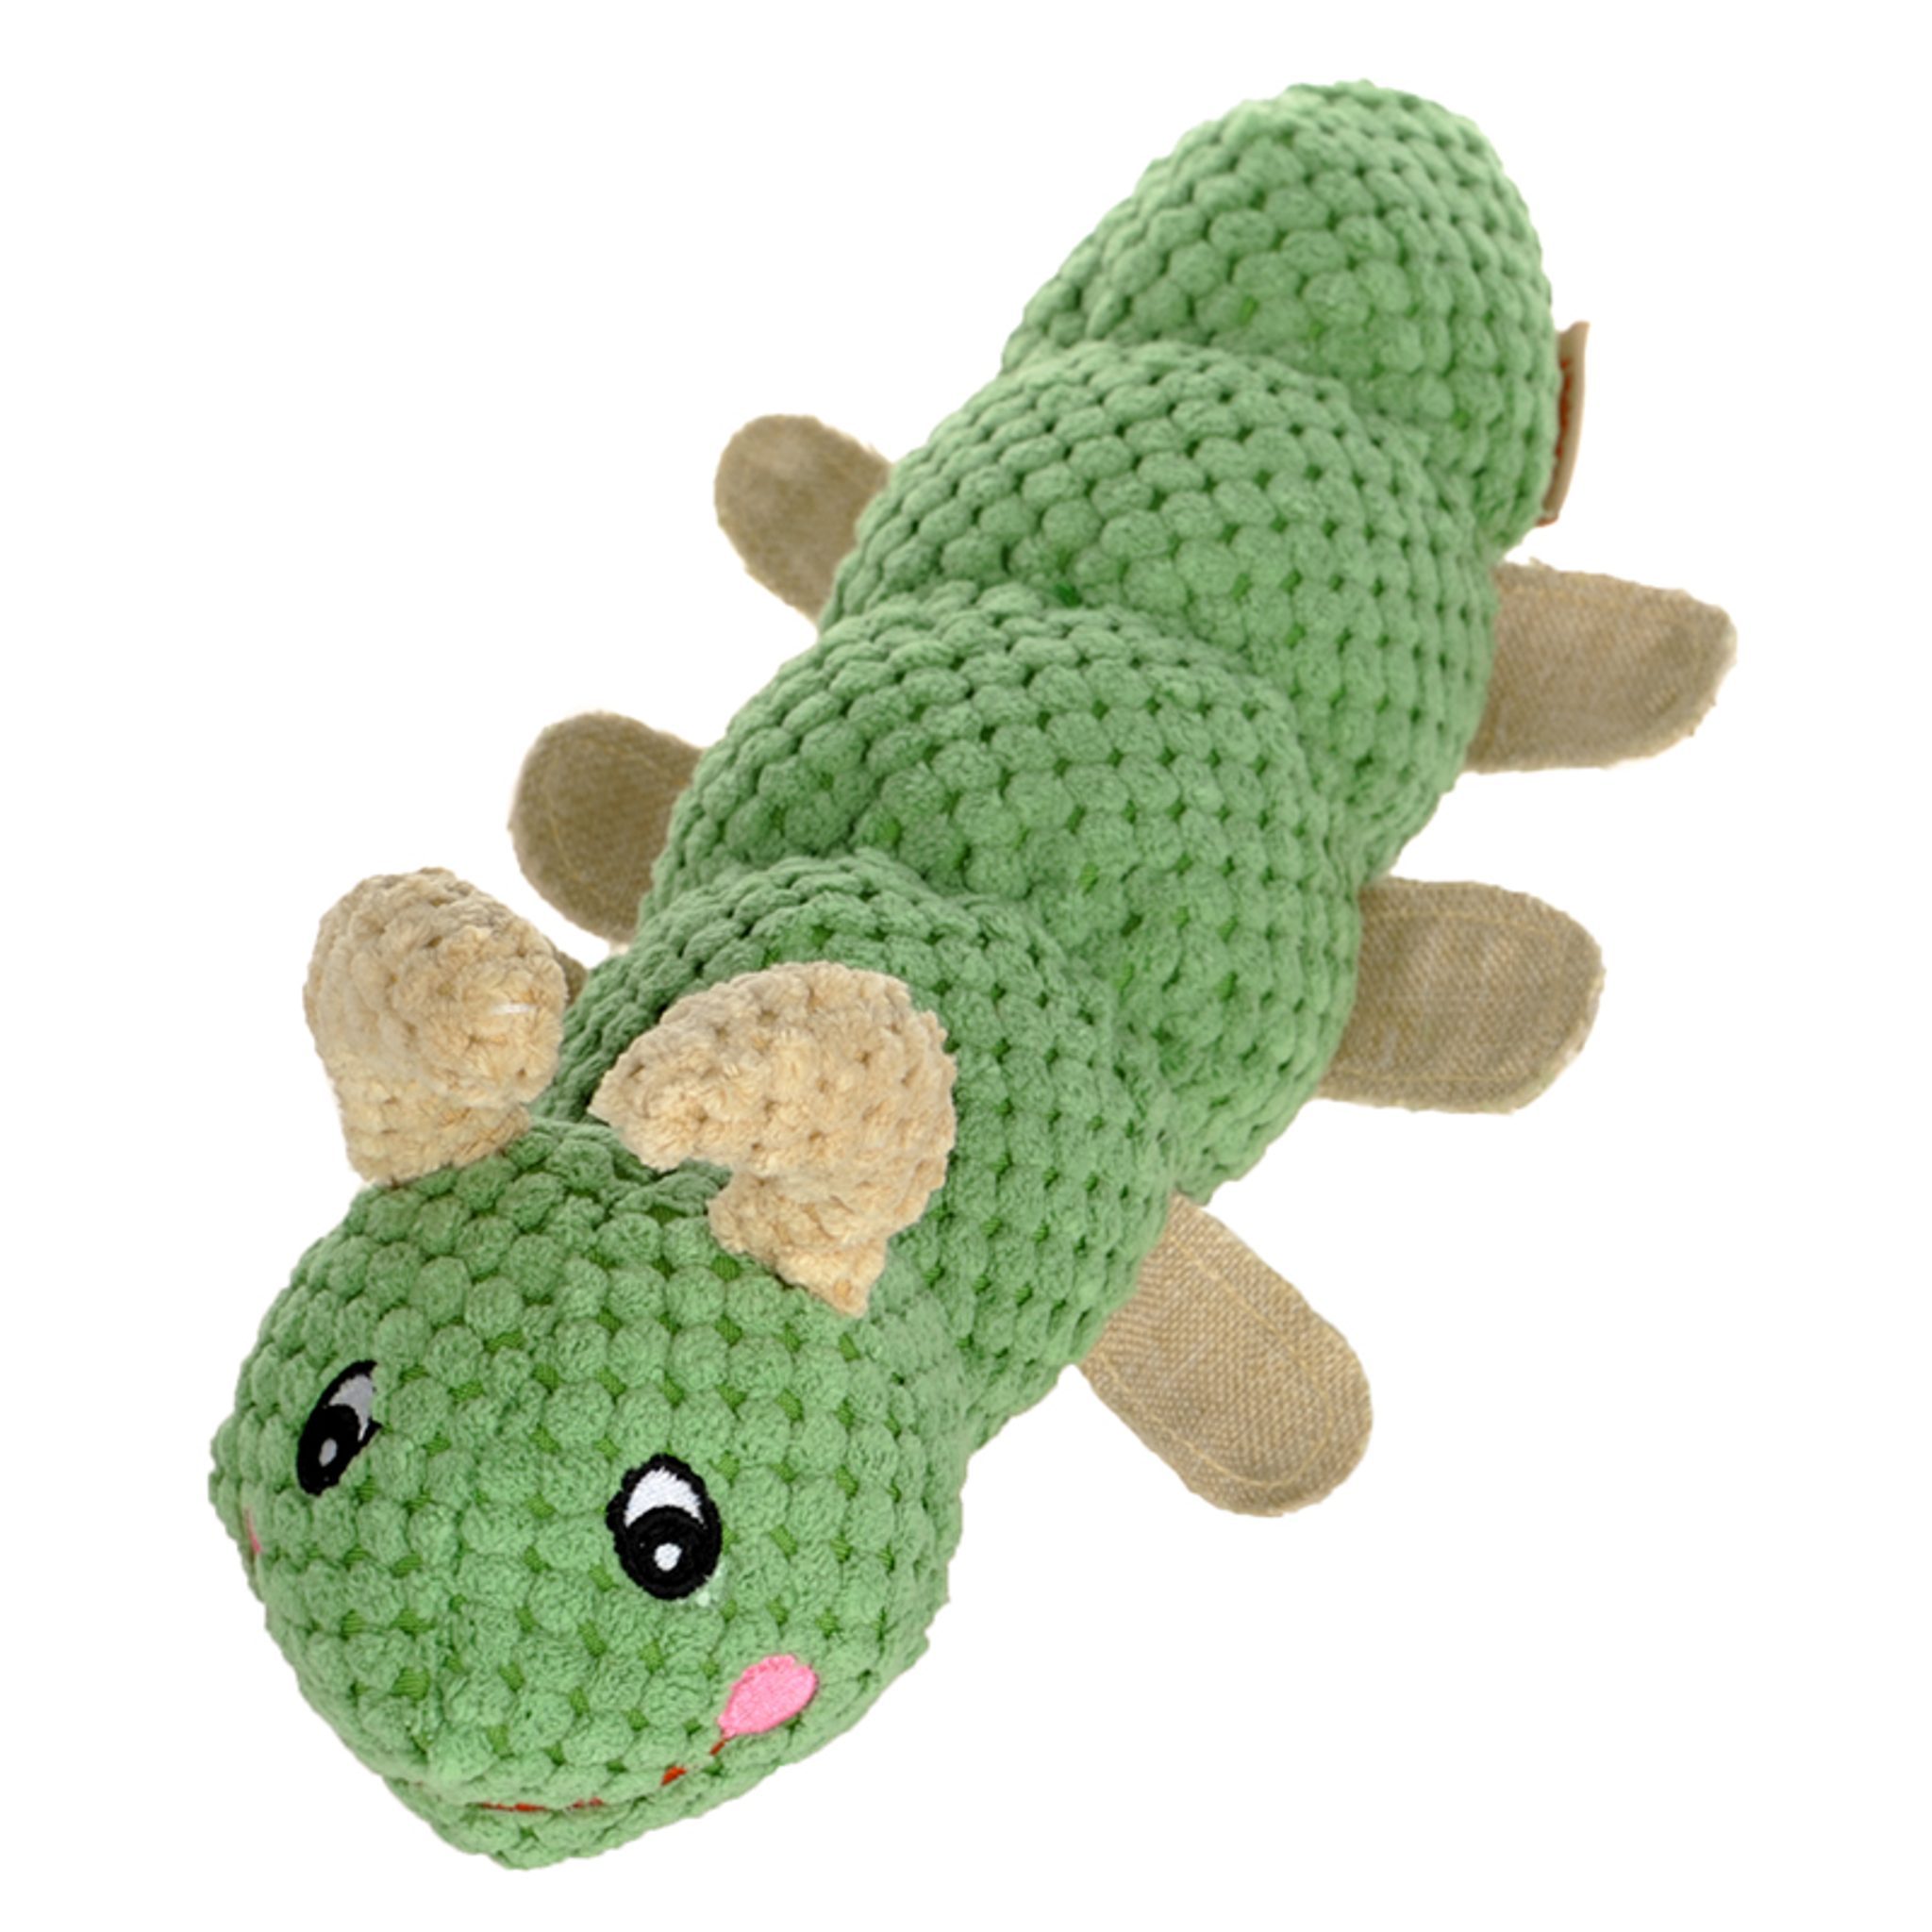 Reedog housenka, plyšová pískací hračka, 30 cm